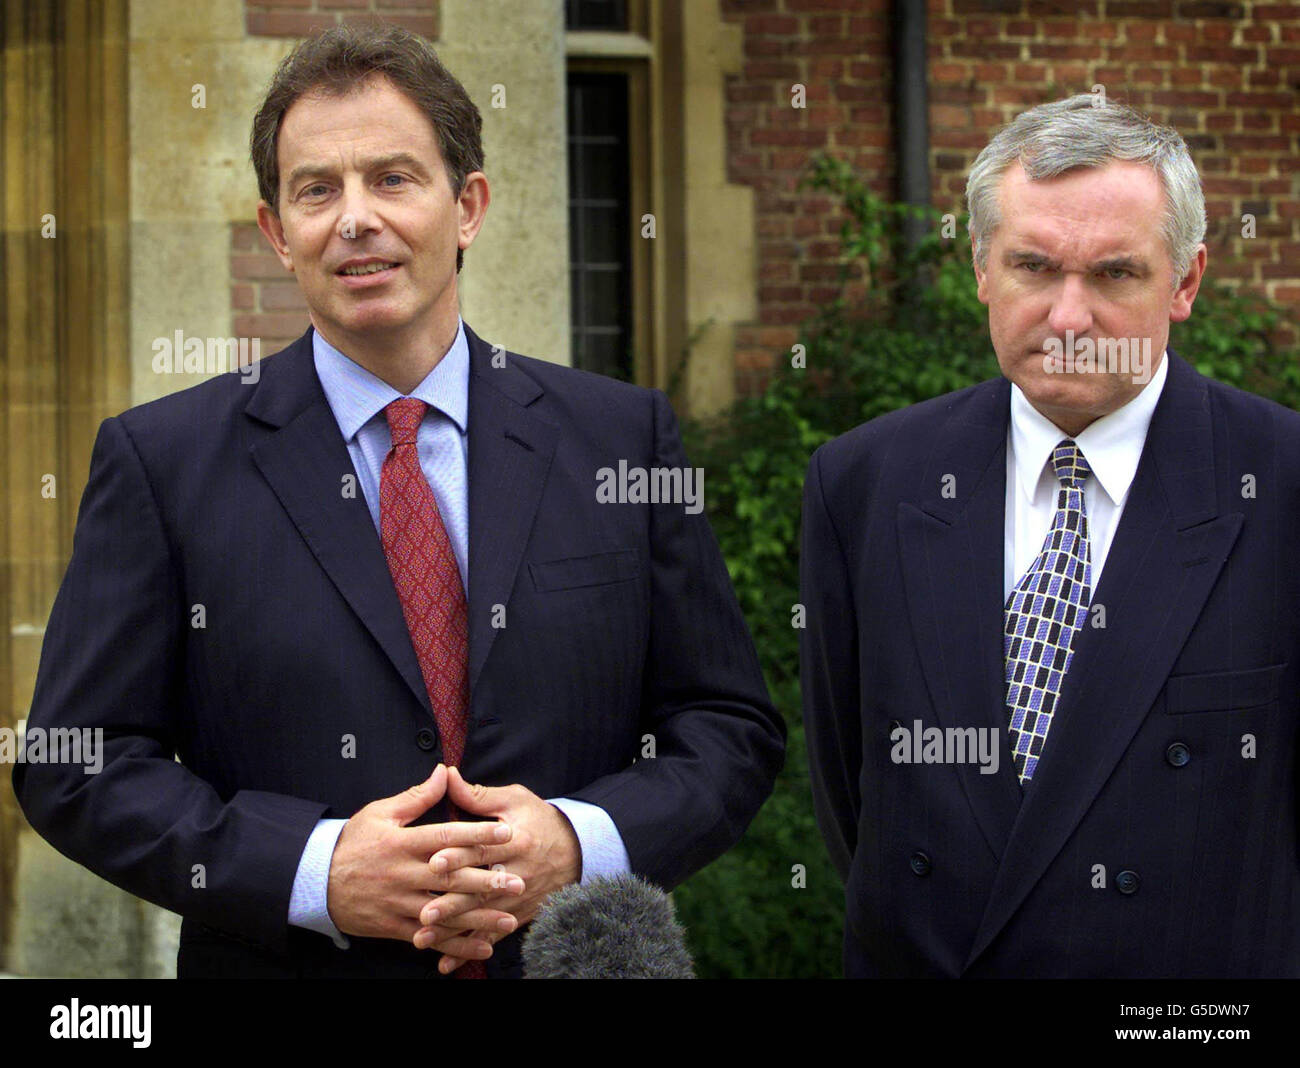 Le Premier ministre britannique Tony Blair, L, avec son homologue irlandais Bertie Ahern, s'entretenir avec les médias à Checkrs, près d'Aylesbury. Les deux premiers ministres se dirigent vers une session de pourparlers dans un pays du Shropshire pour tenter de faire avancer le processus de paix en Irlande du Nord. 16/1/04: Ony Blair a eu des entretiens avec de hauts ministres sur les progrès de ses réformes du secteur public. Les ministres discutaient de l'impact des politiques gouvernementales en matière d'éducation, de santé et de criminalité lors de la retraite officielle du Premier ministre dans les pays, Chequers Banque D'Images